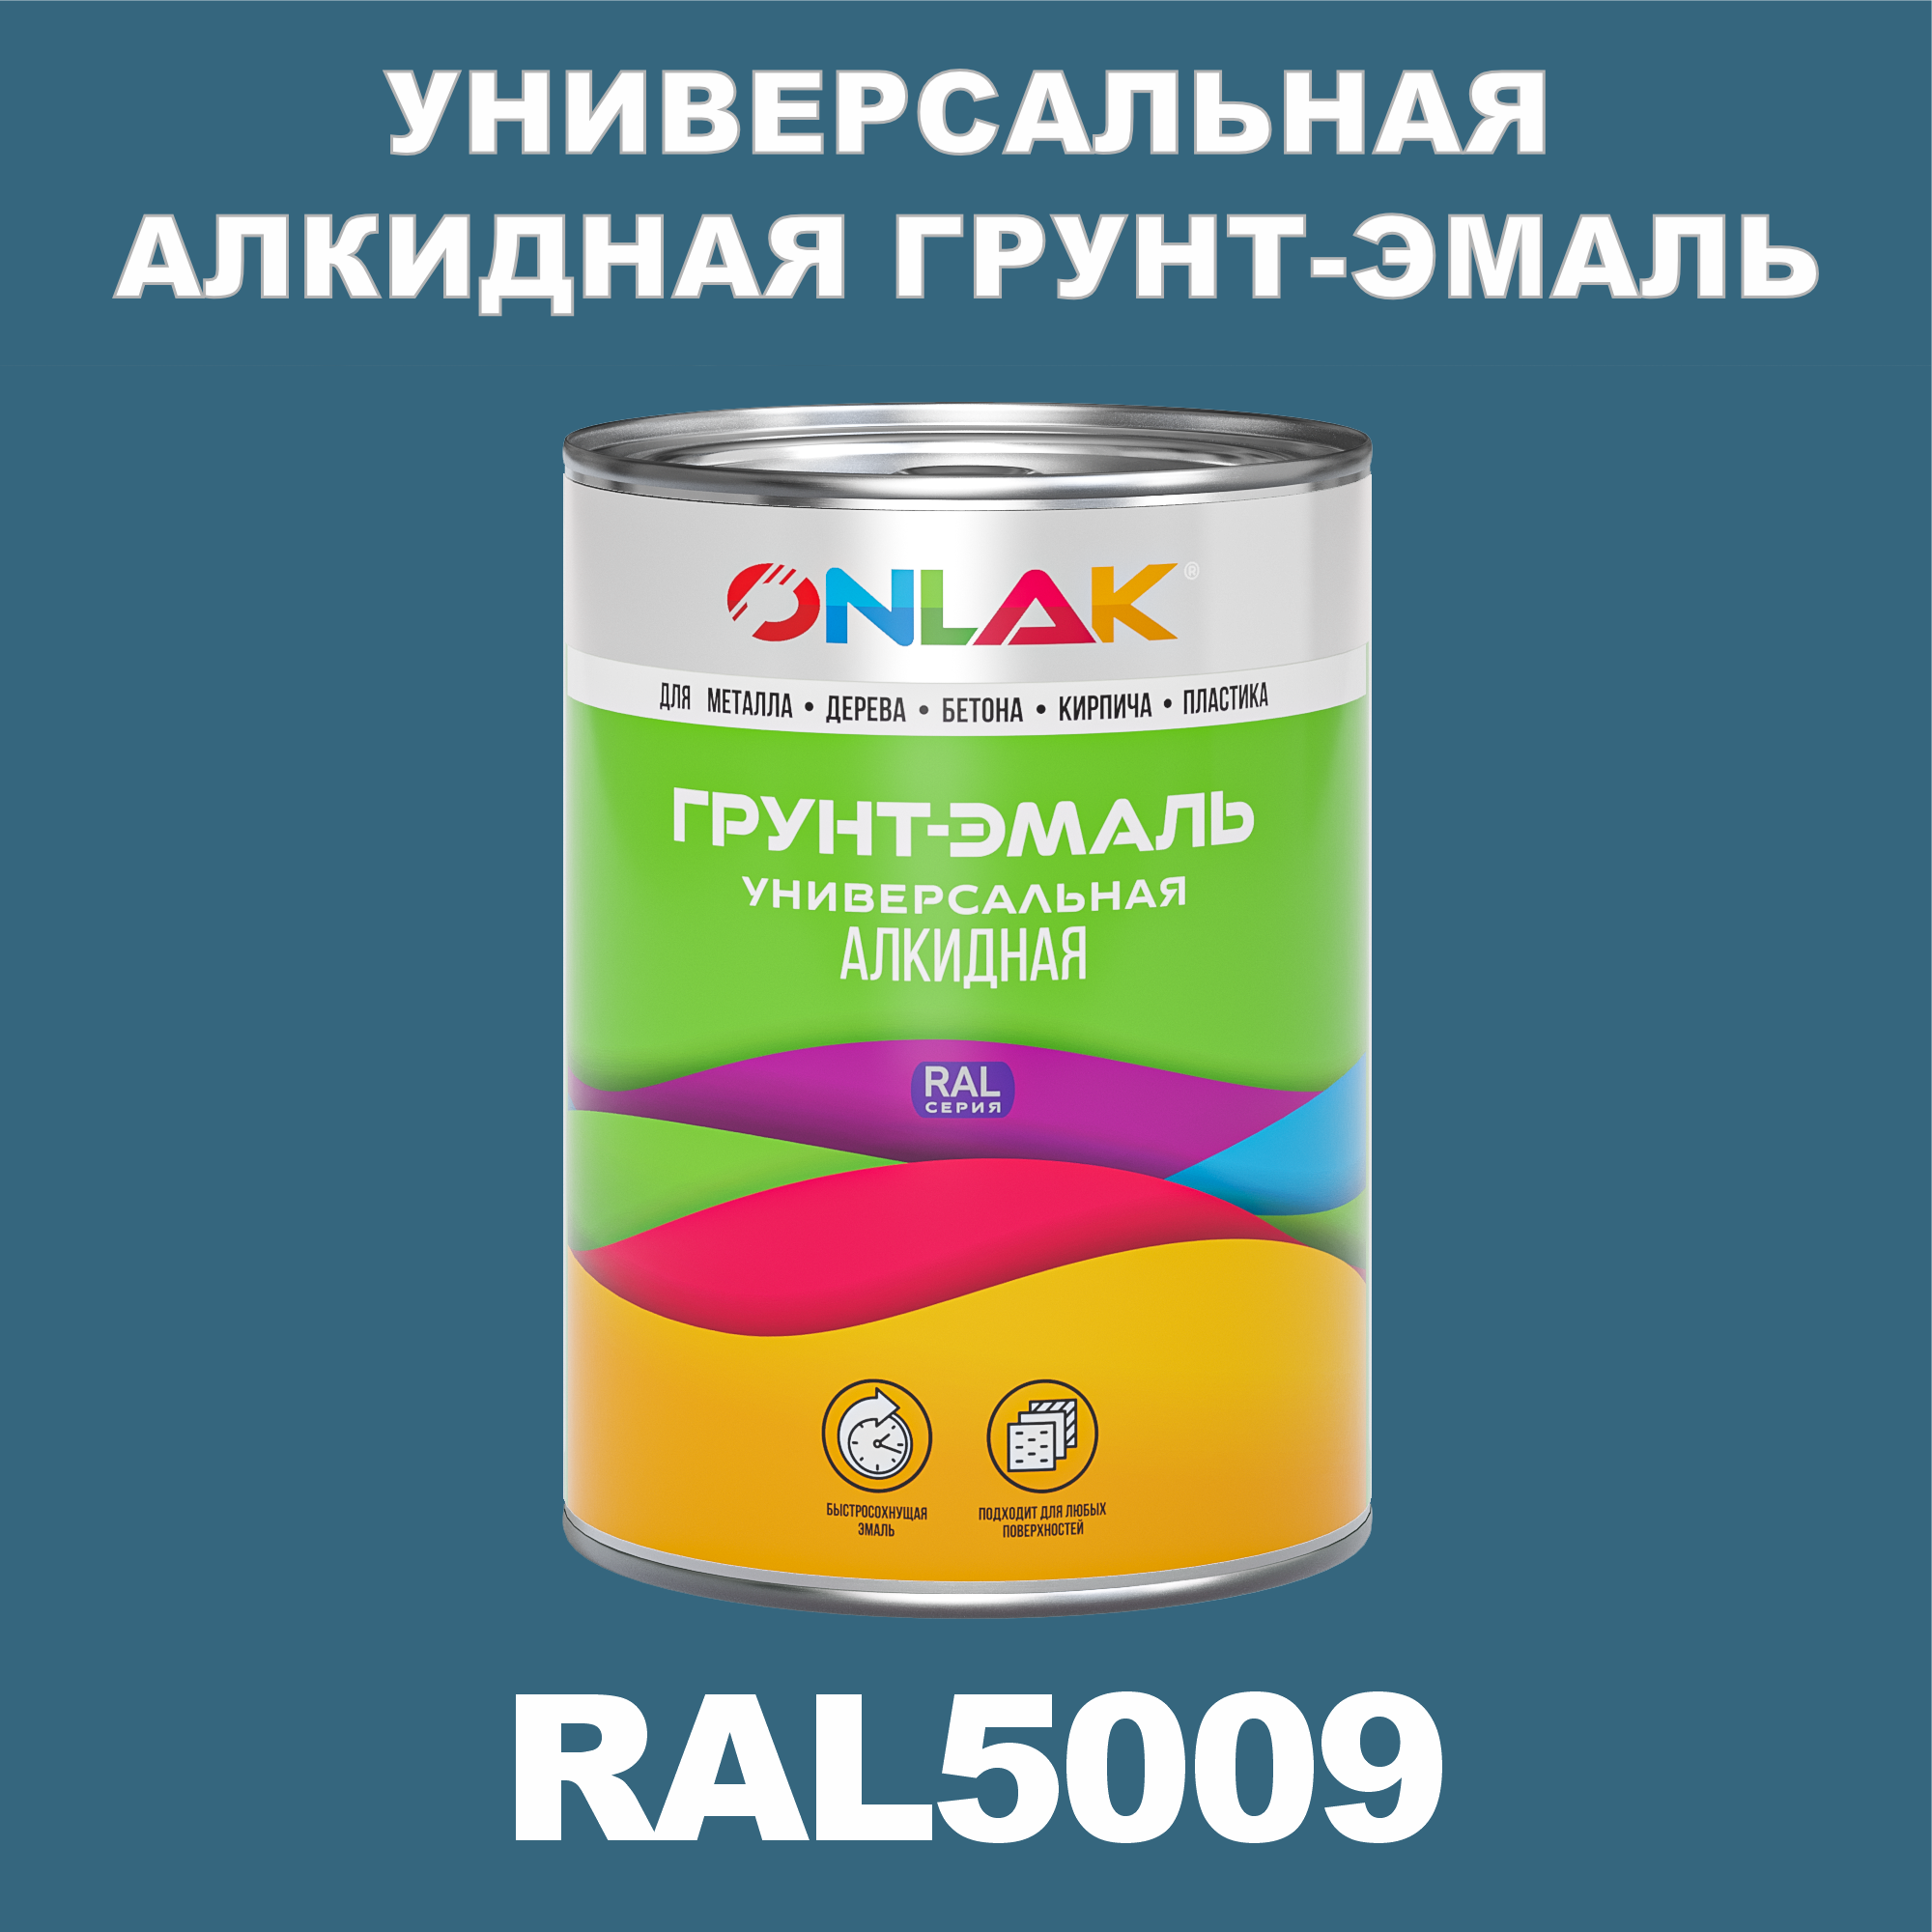 Грунт-эмаль ONLAK 1К RAL5009 антикоррозионная алкидная по металлу по ржавчине 1 кг